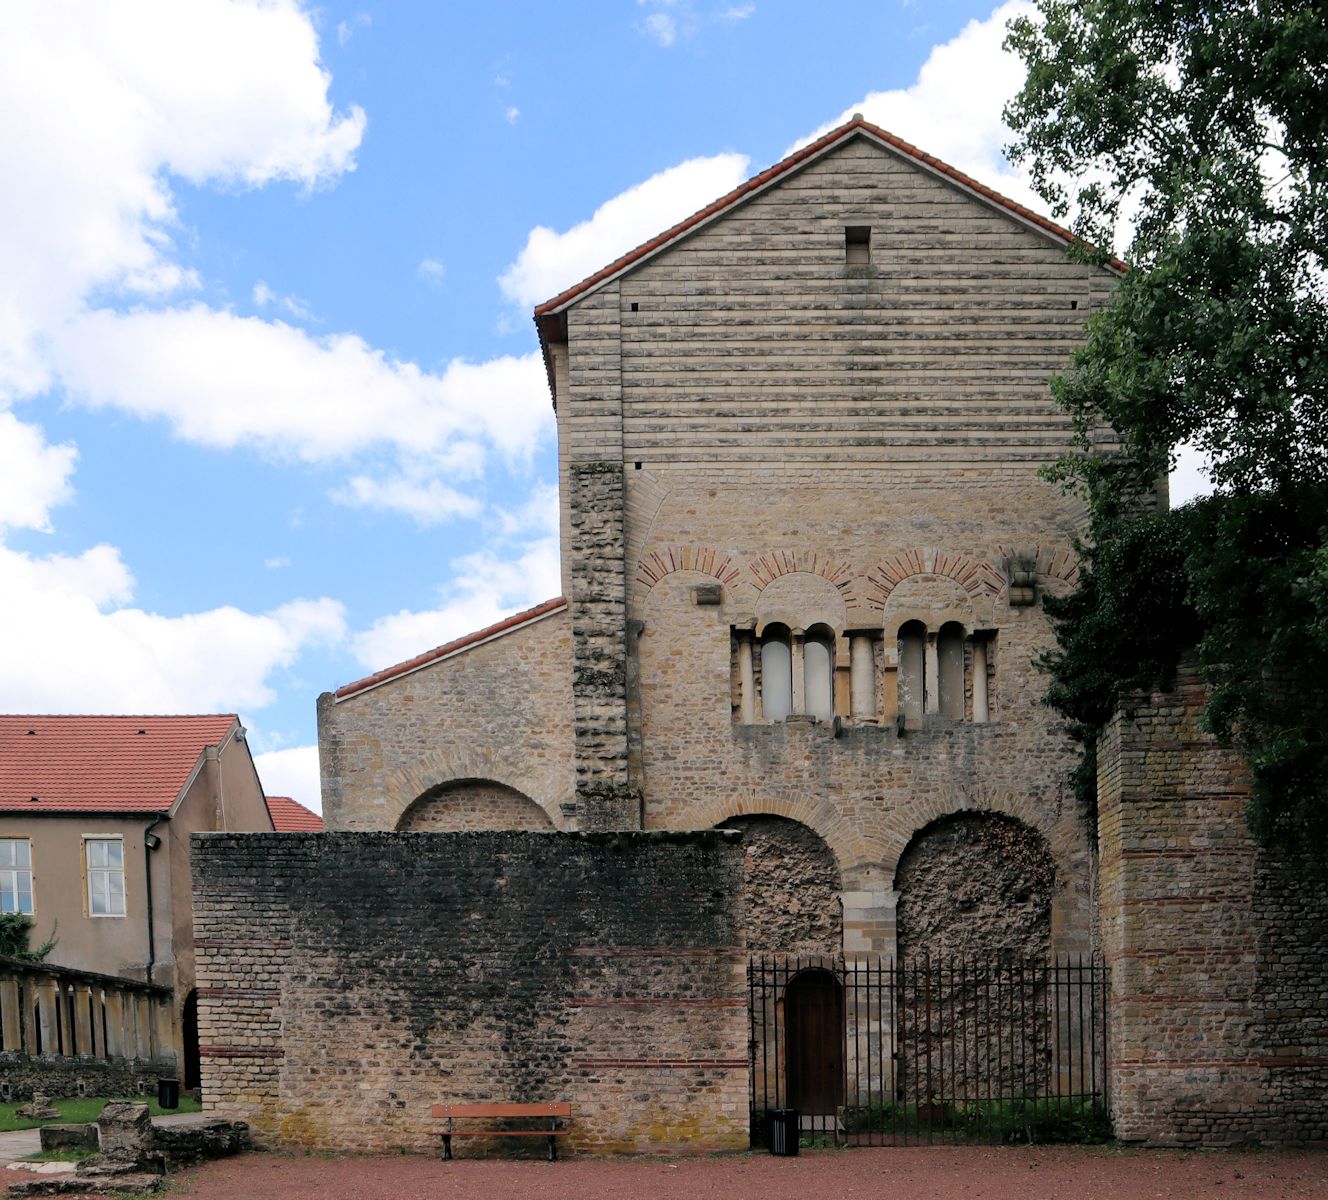 Kirche St-Pierre-aux-Nonnains in Metz, die älteste Kirche Frankreichs und eine der ältesten erhaltenen Kirchen der Welt